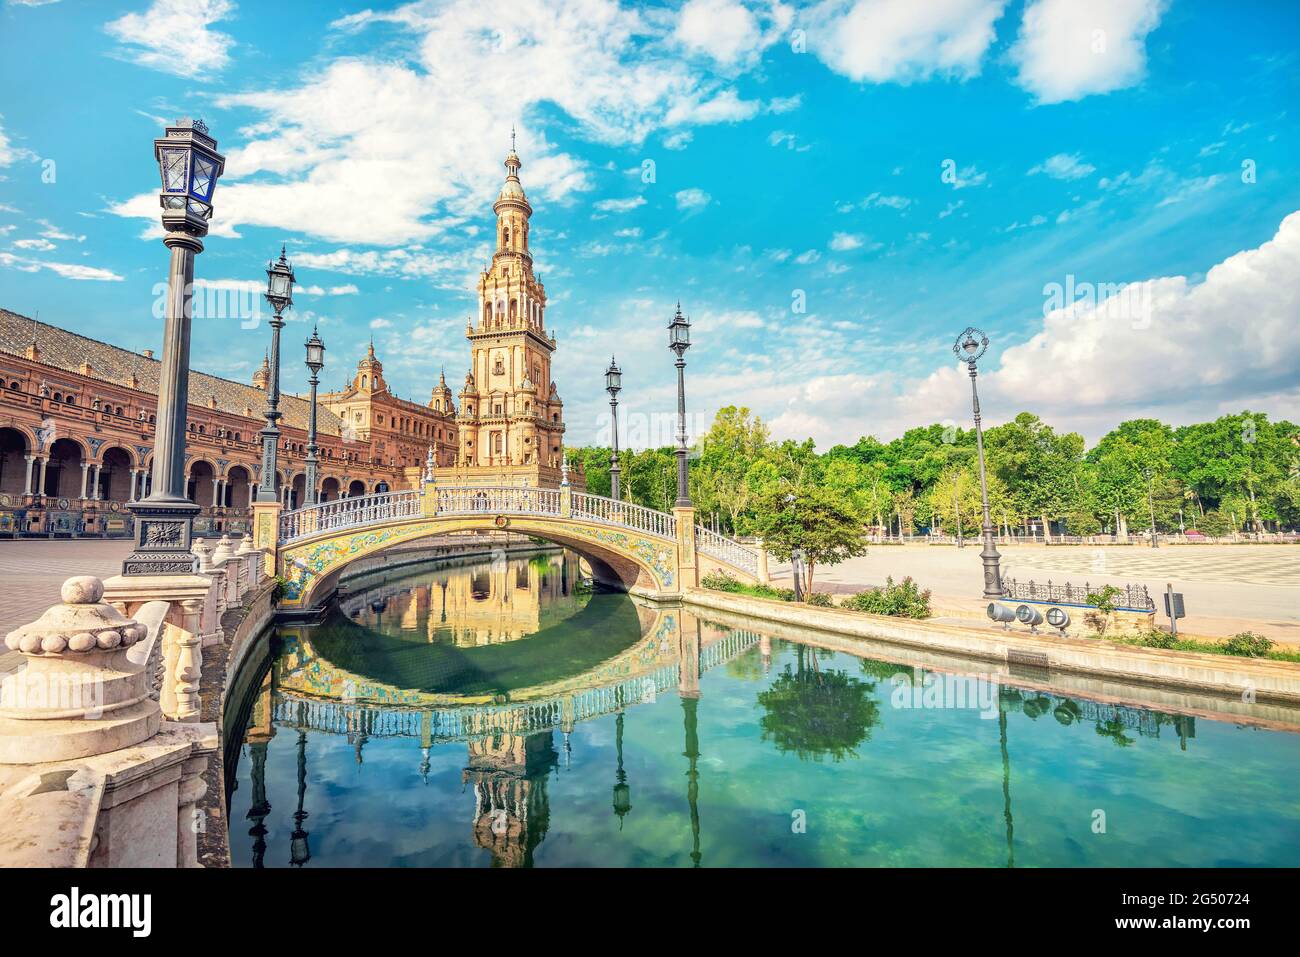 Vista panorámica con puente y reflejo en el agua de la famosa Plaza de España. Sevilla, Andalucía, España Foto de stock